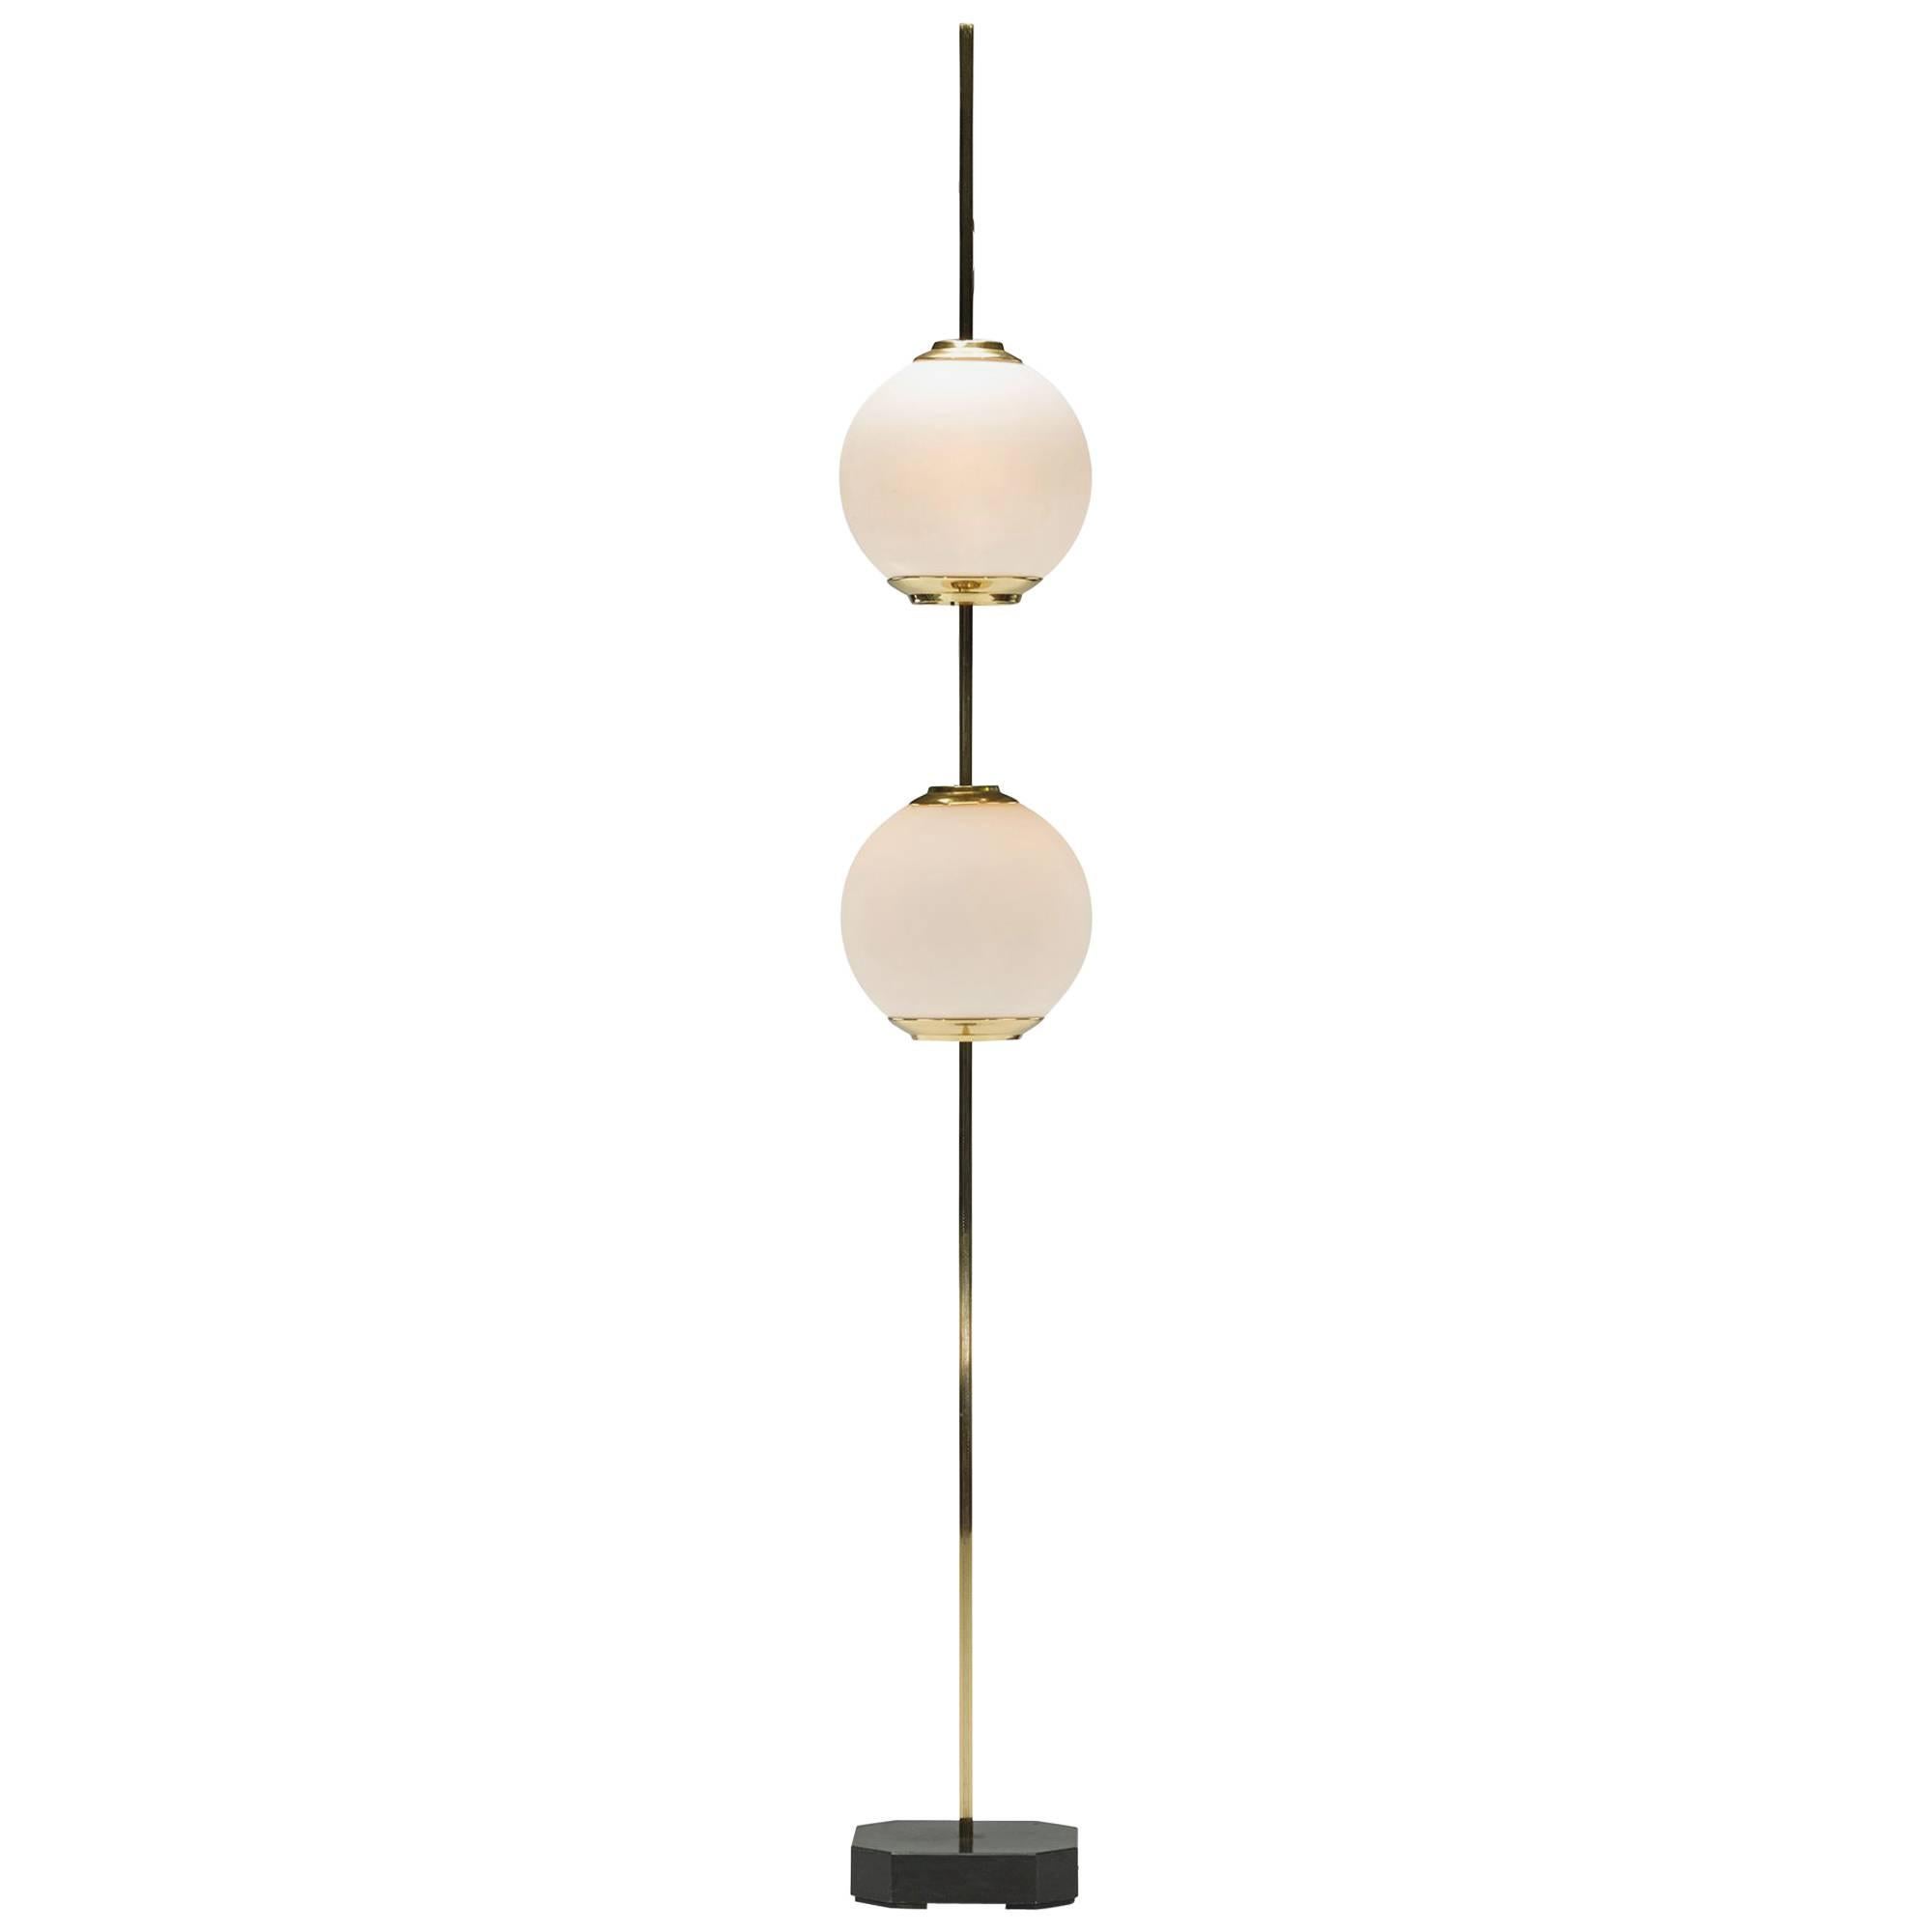 Doppio Pallone Floor Lamp, Model Lte 10 by Luigi Caccia Dominioni